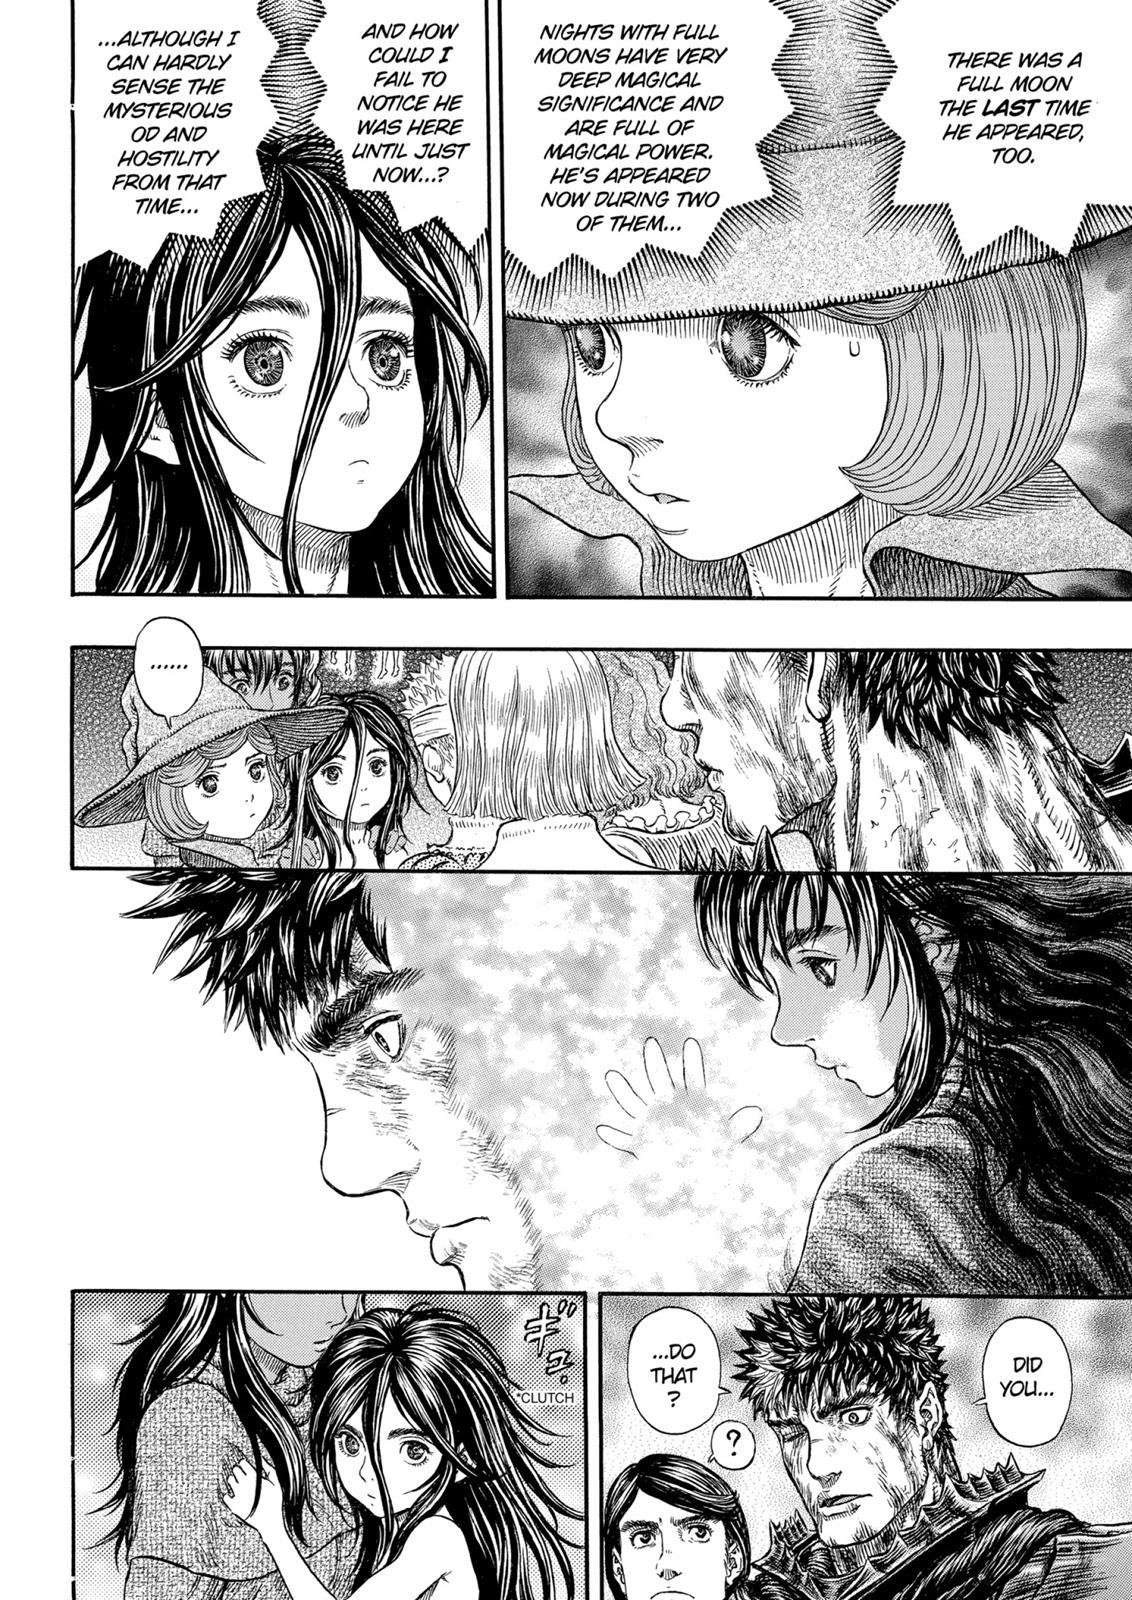 Berserk Manga Chapter 317 image 13